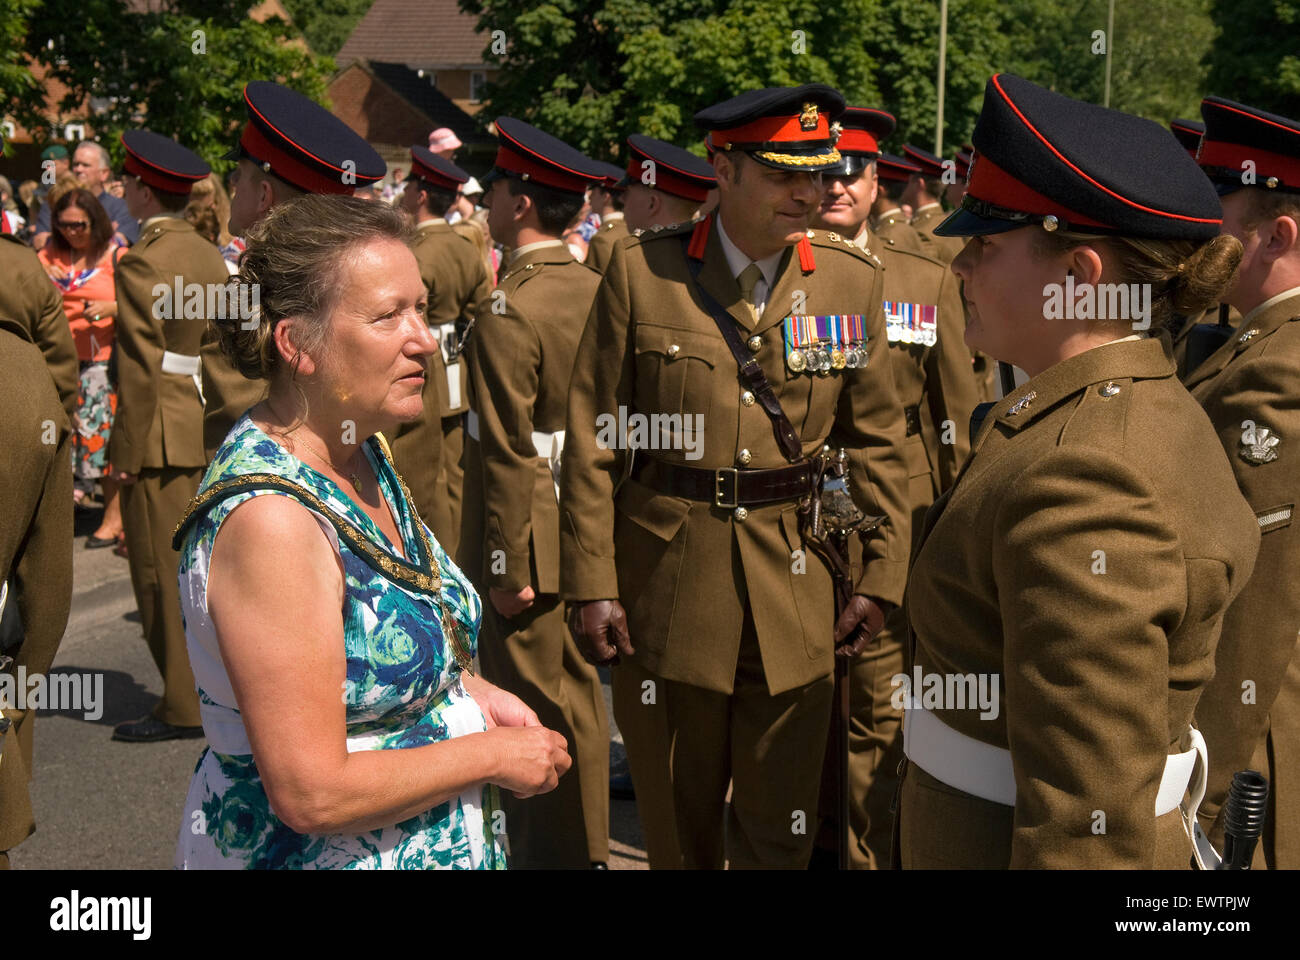 Maire, Sally étang, l'inspection des troupes, adieu à la garnison Festival, Bordon, Hampshire, Royaume-Uni. Samedi 27 juin 2015. Banque D'Images